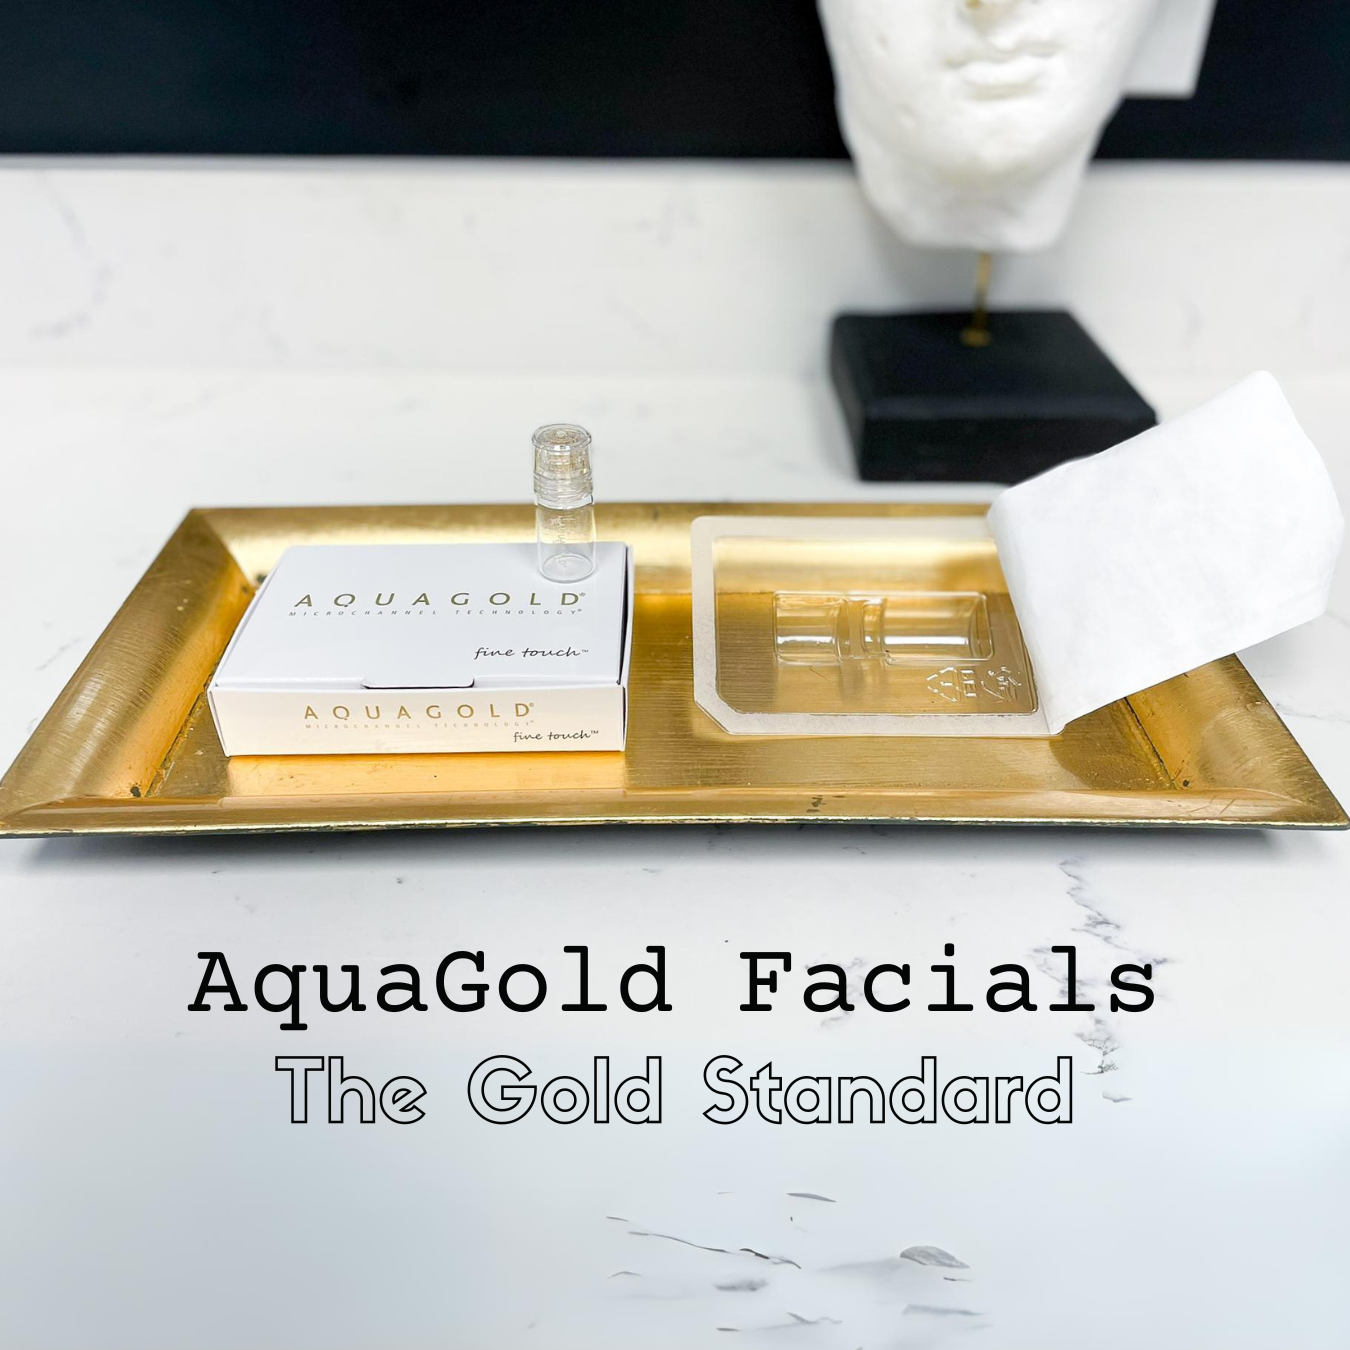 aquagold facials now at simply dermatology